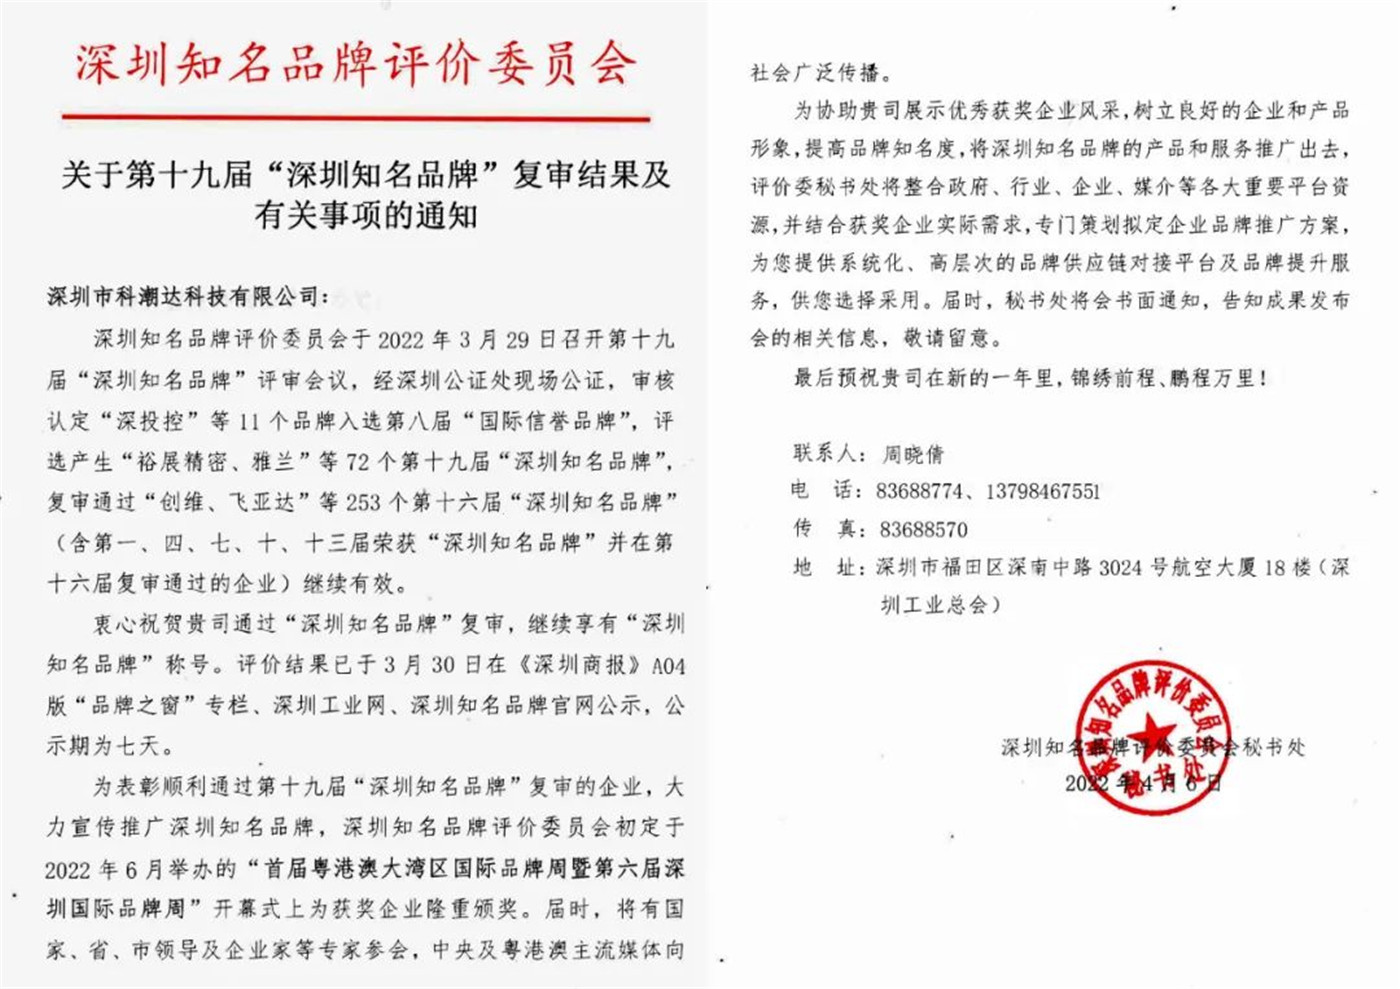 Οικογένειες KECHAODA πέρασαν αναθεώρηση "γνωστές μάρκες Shenzhen"!